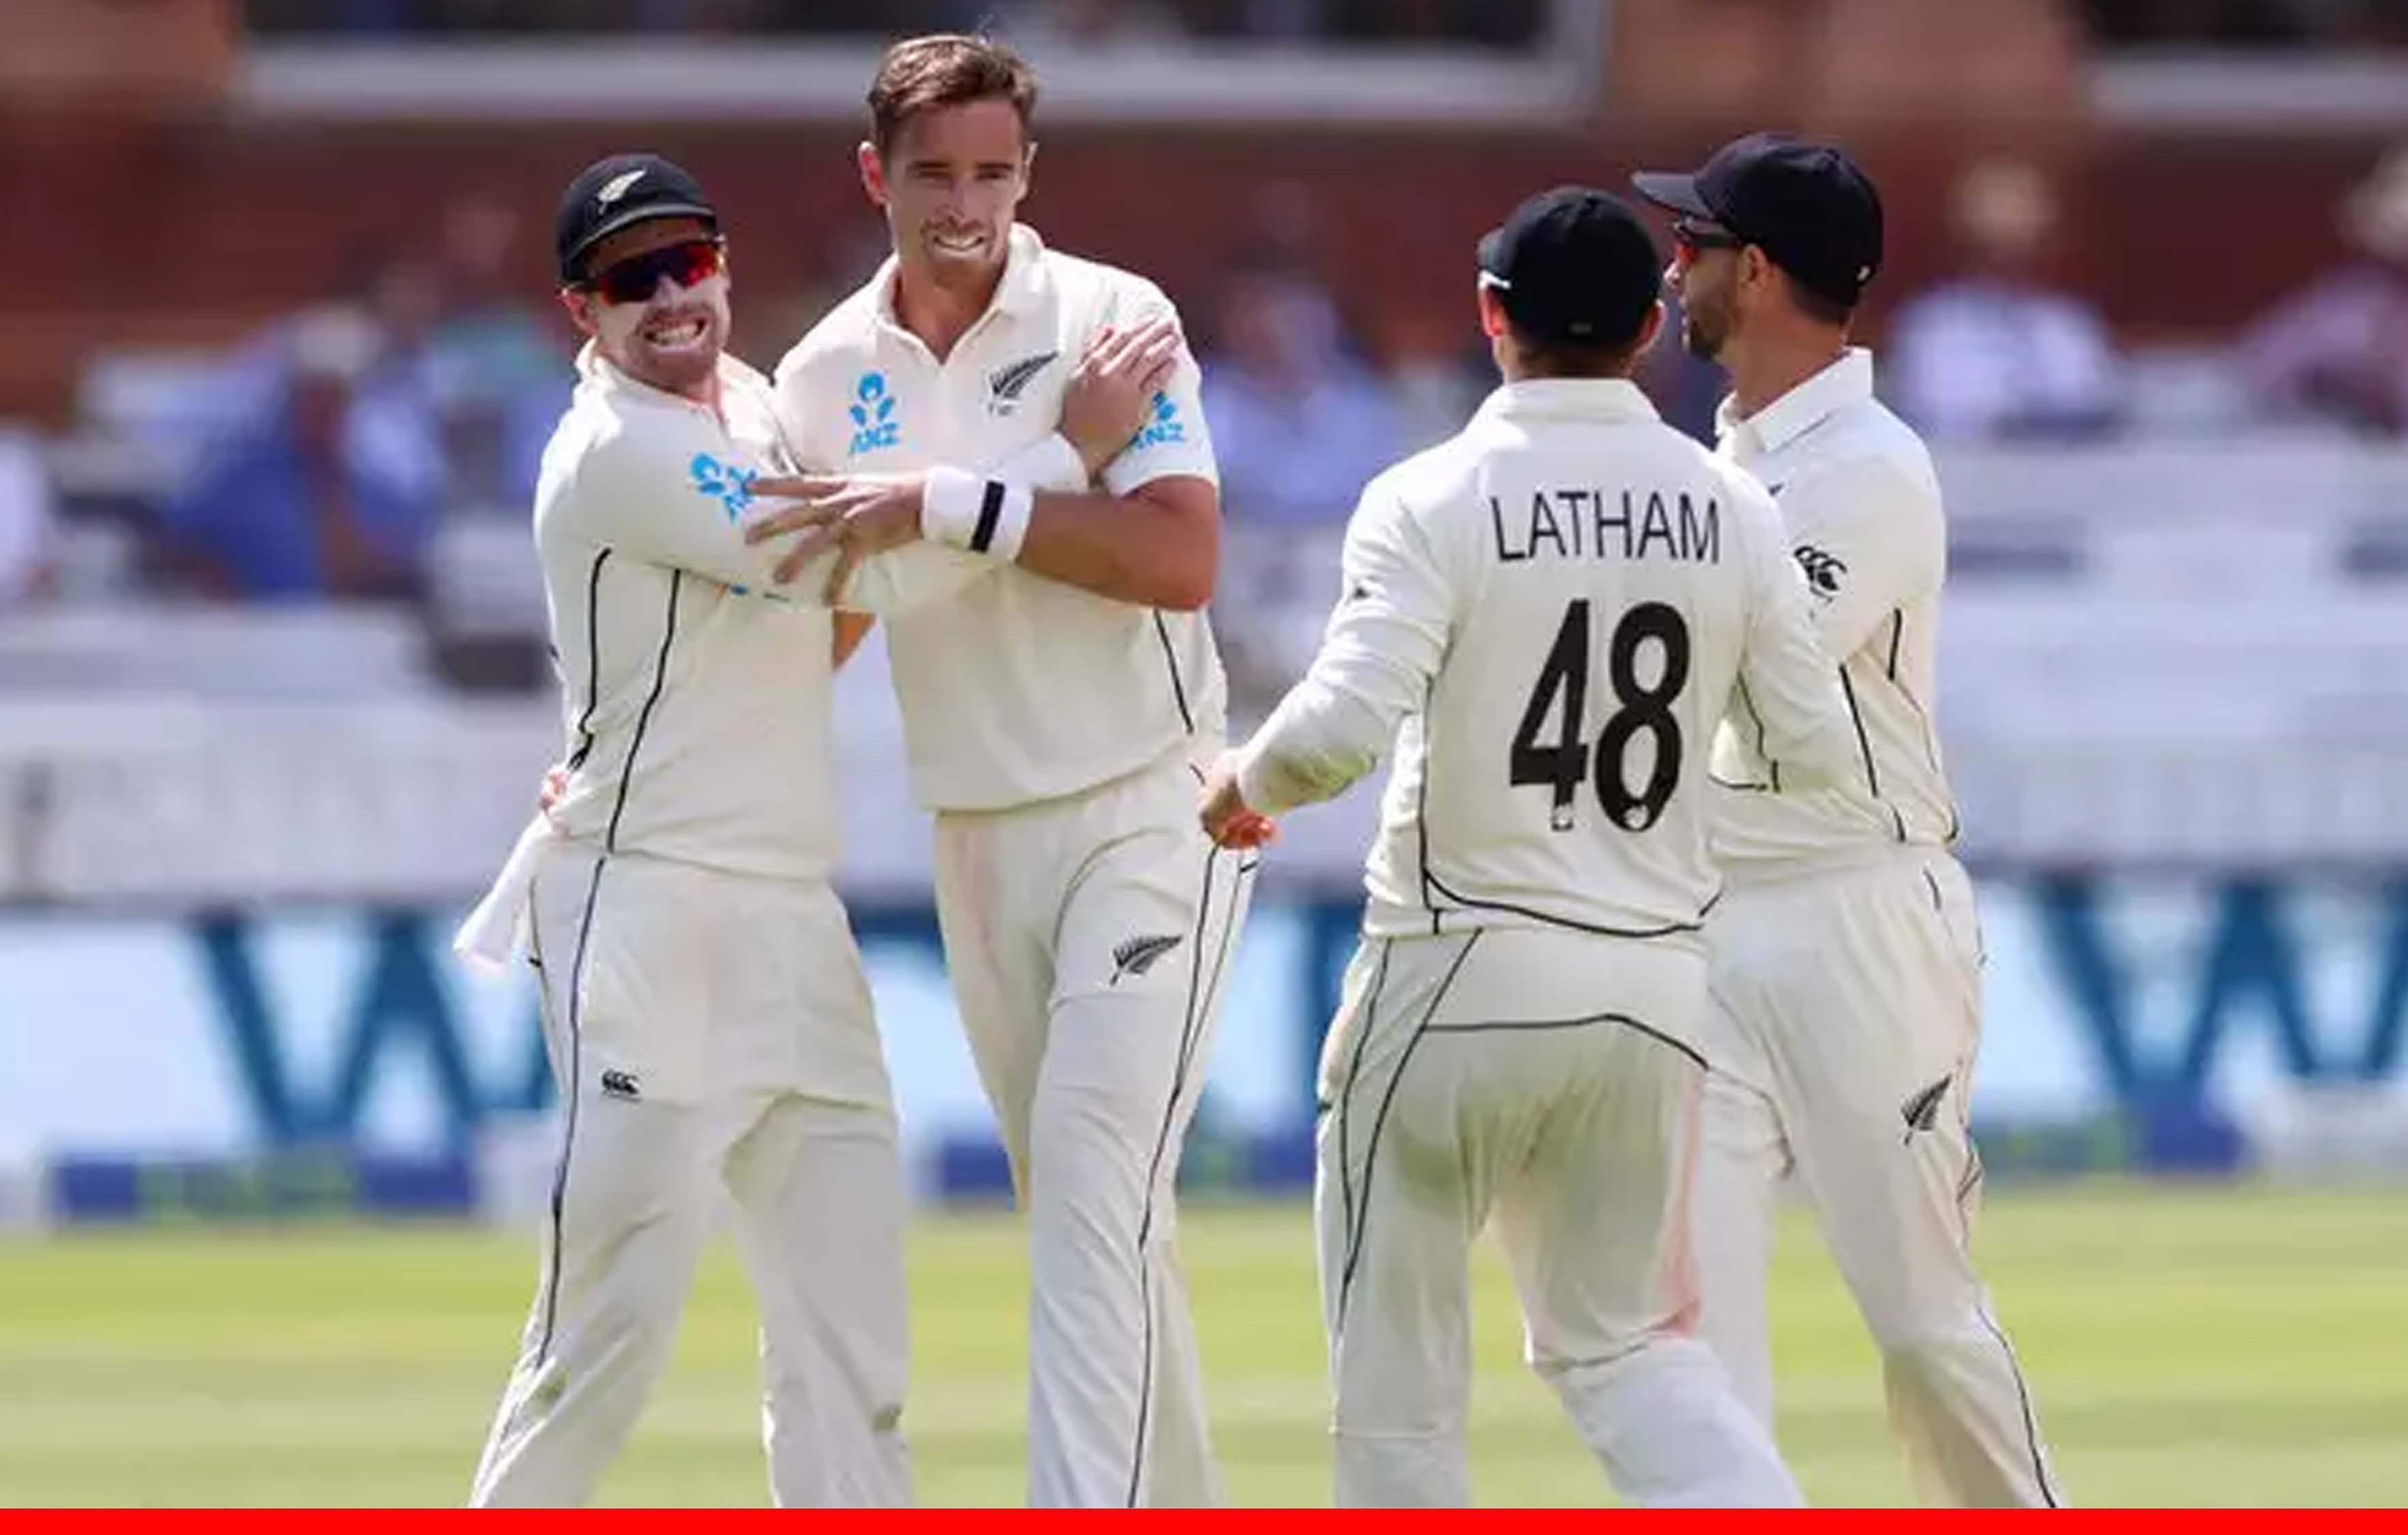 रोरी बर्न्स की शतकीय पारी पर भरे पड़े टिम साउदी के छह विकेट, न्यूजीलैंड को बढ़त